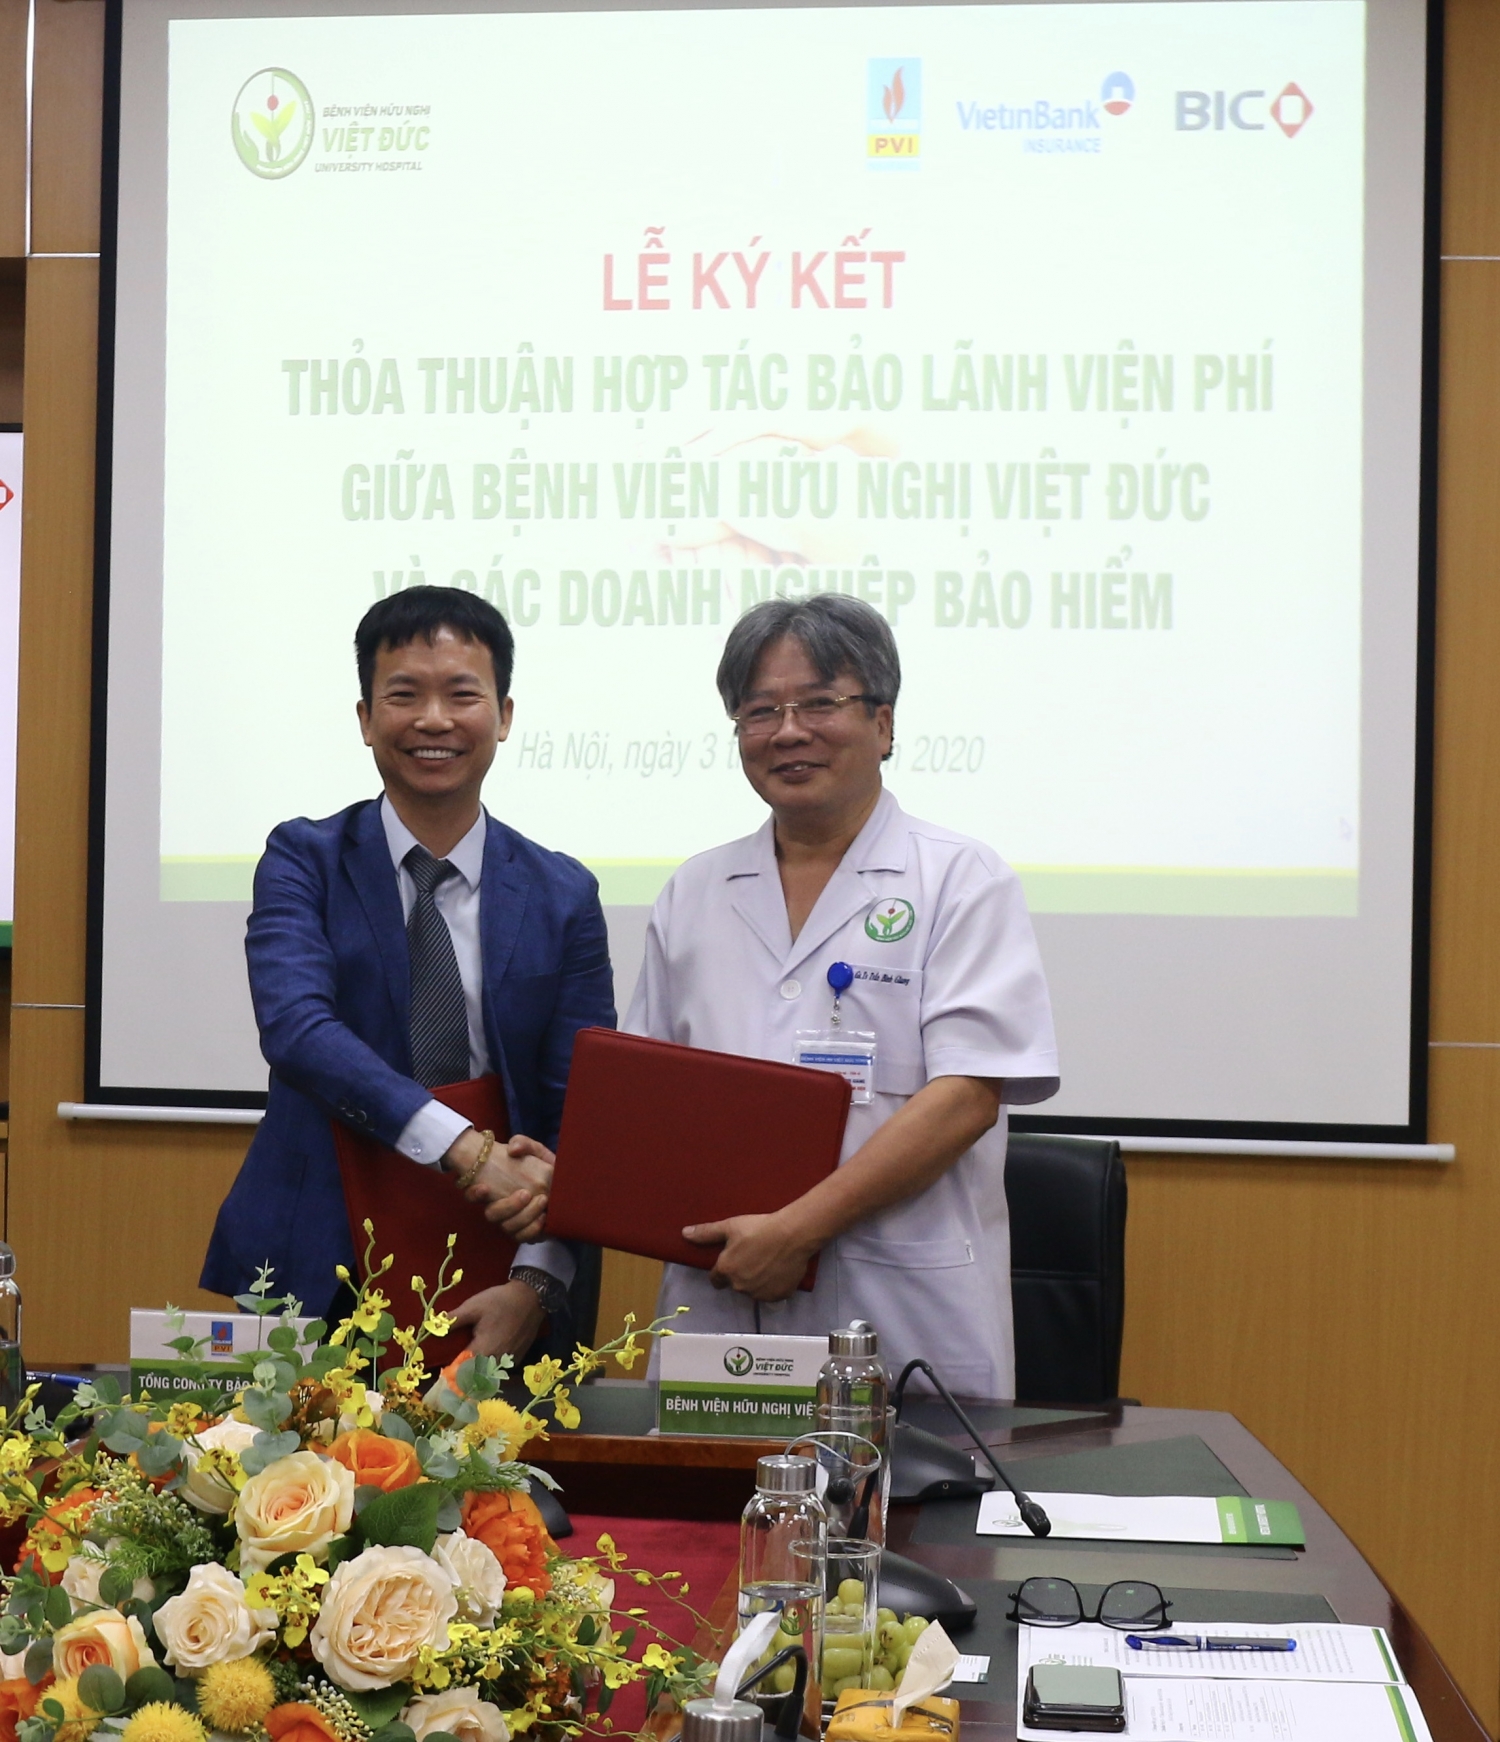 Bảo hiểm PVI và Bệnh viện Hữu nghị Việt Đức ký kết Thỏa thuận hợp tác bảo lãnh viện phí